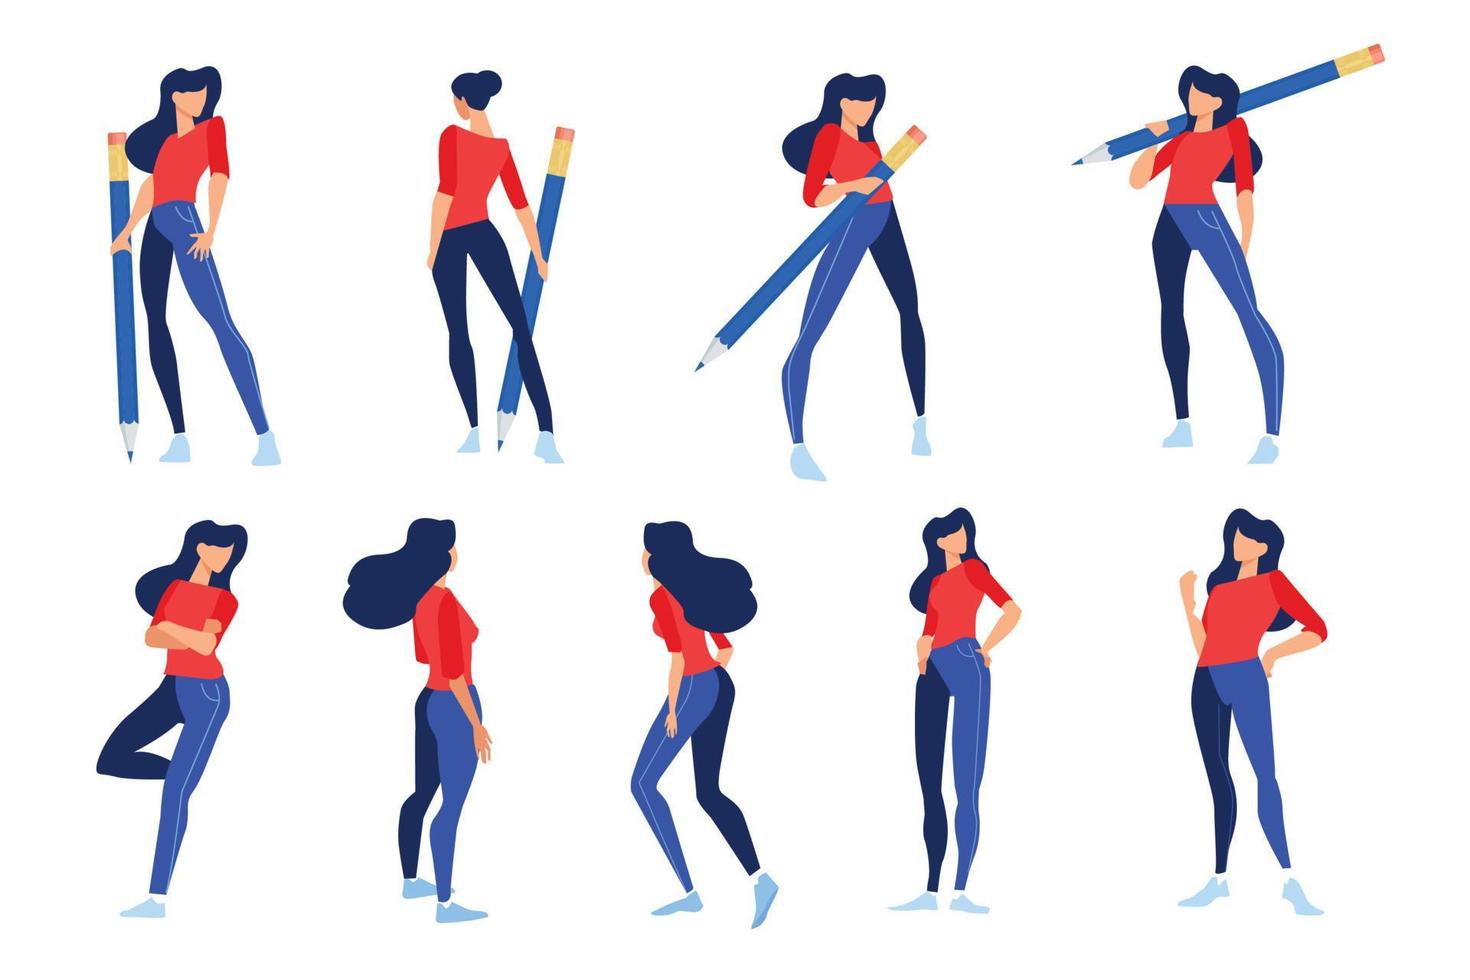 illustrazioni vettoriali di donna in diverse pose con la matita. concetti per grafica e web design, materiale di marketing, modelli di presentazione aziendale.